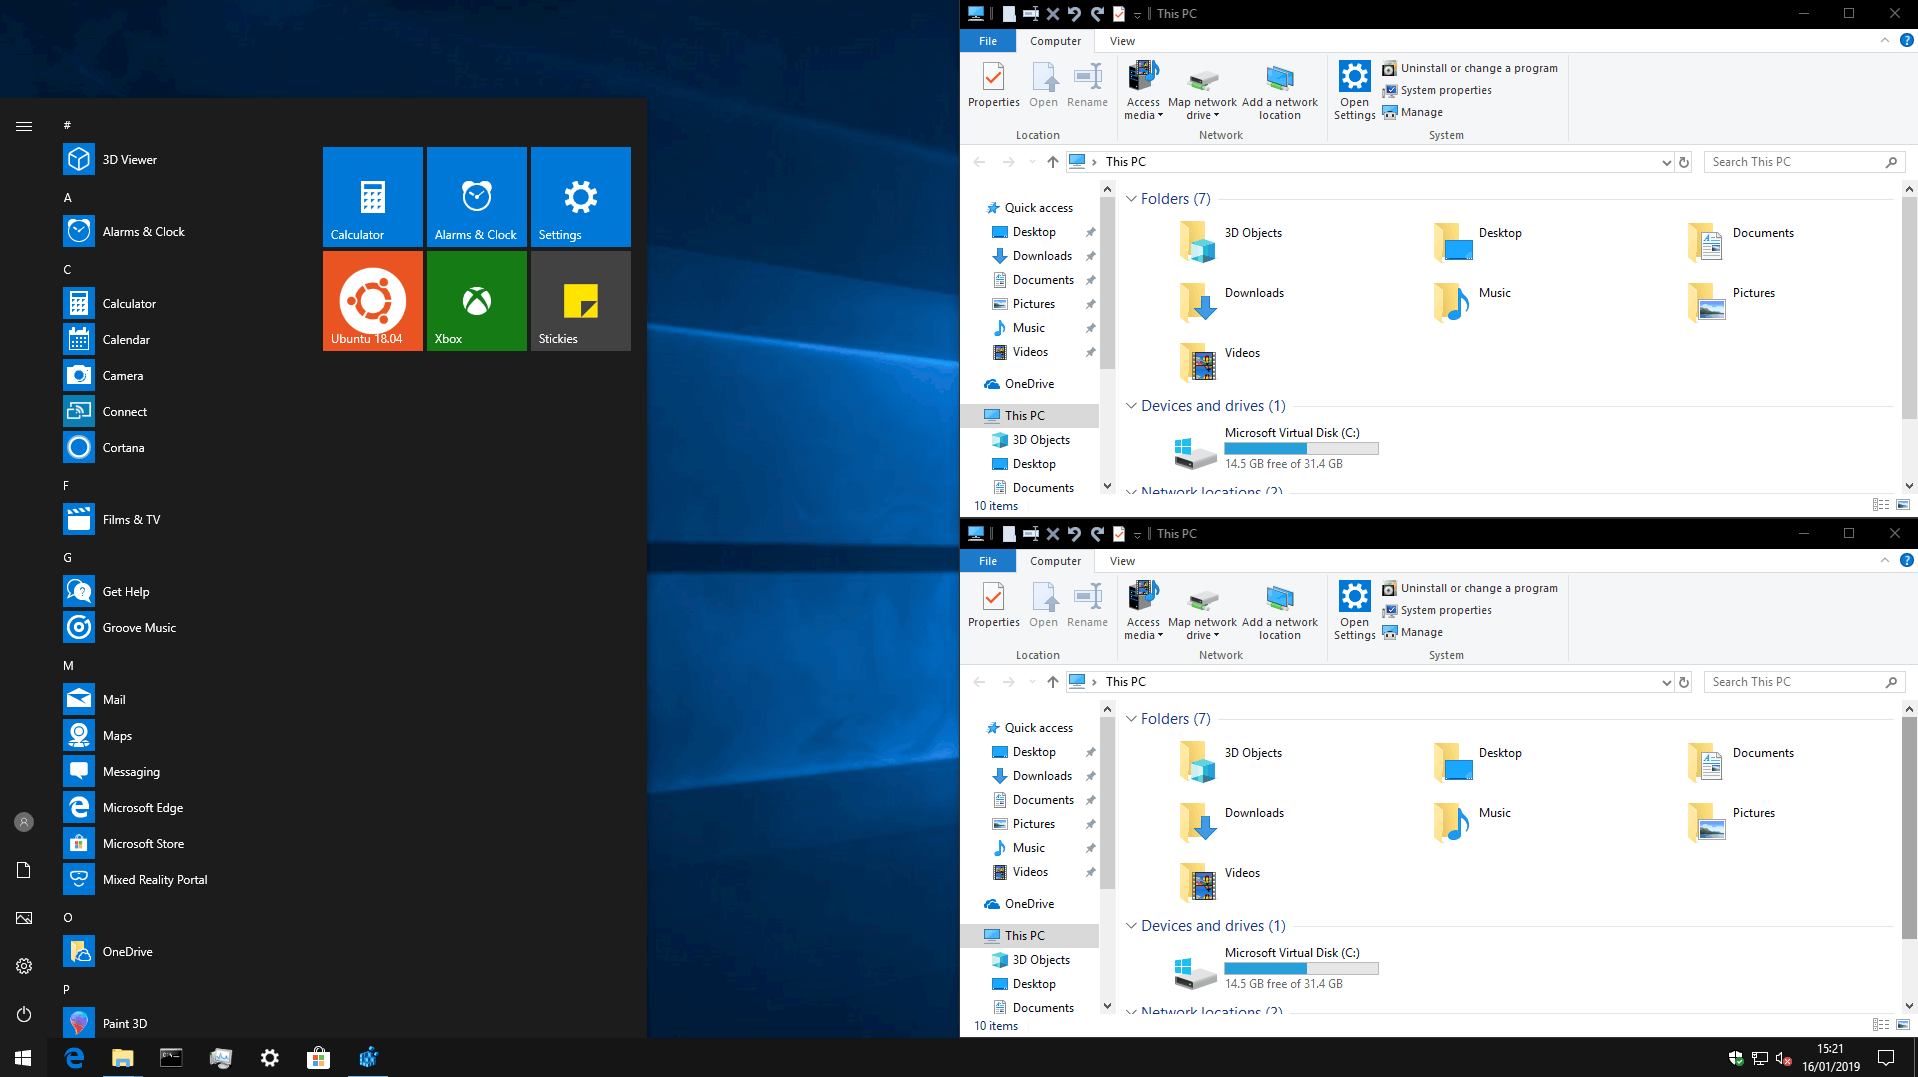 Cách lấy thanh tiêu đề chủ đề tối trong Windows 10 mà không thay đổi màu nhấn của bạn